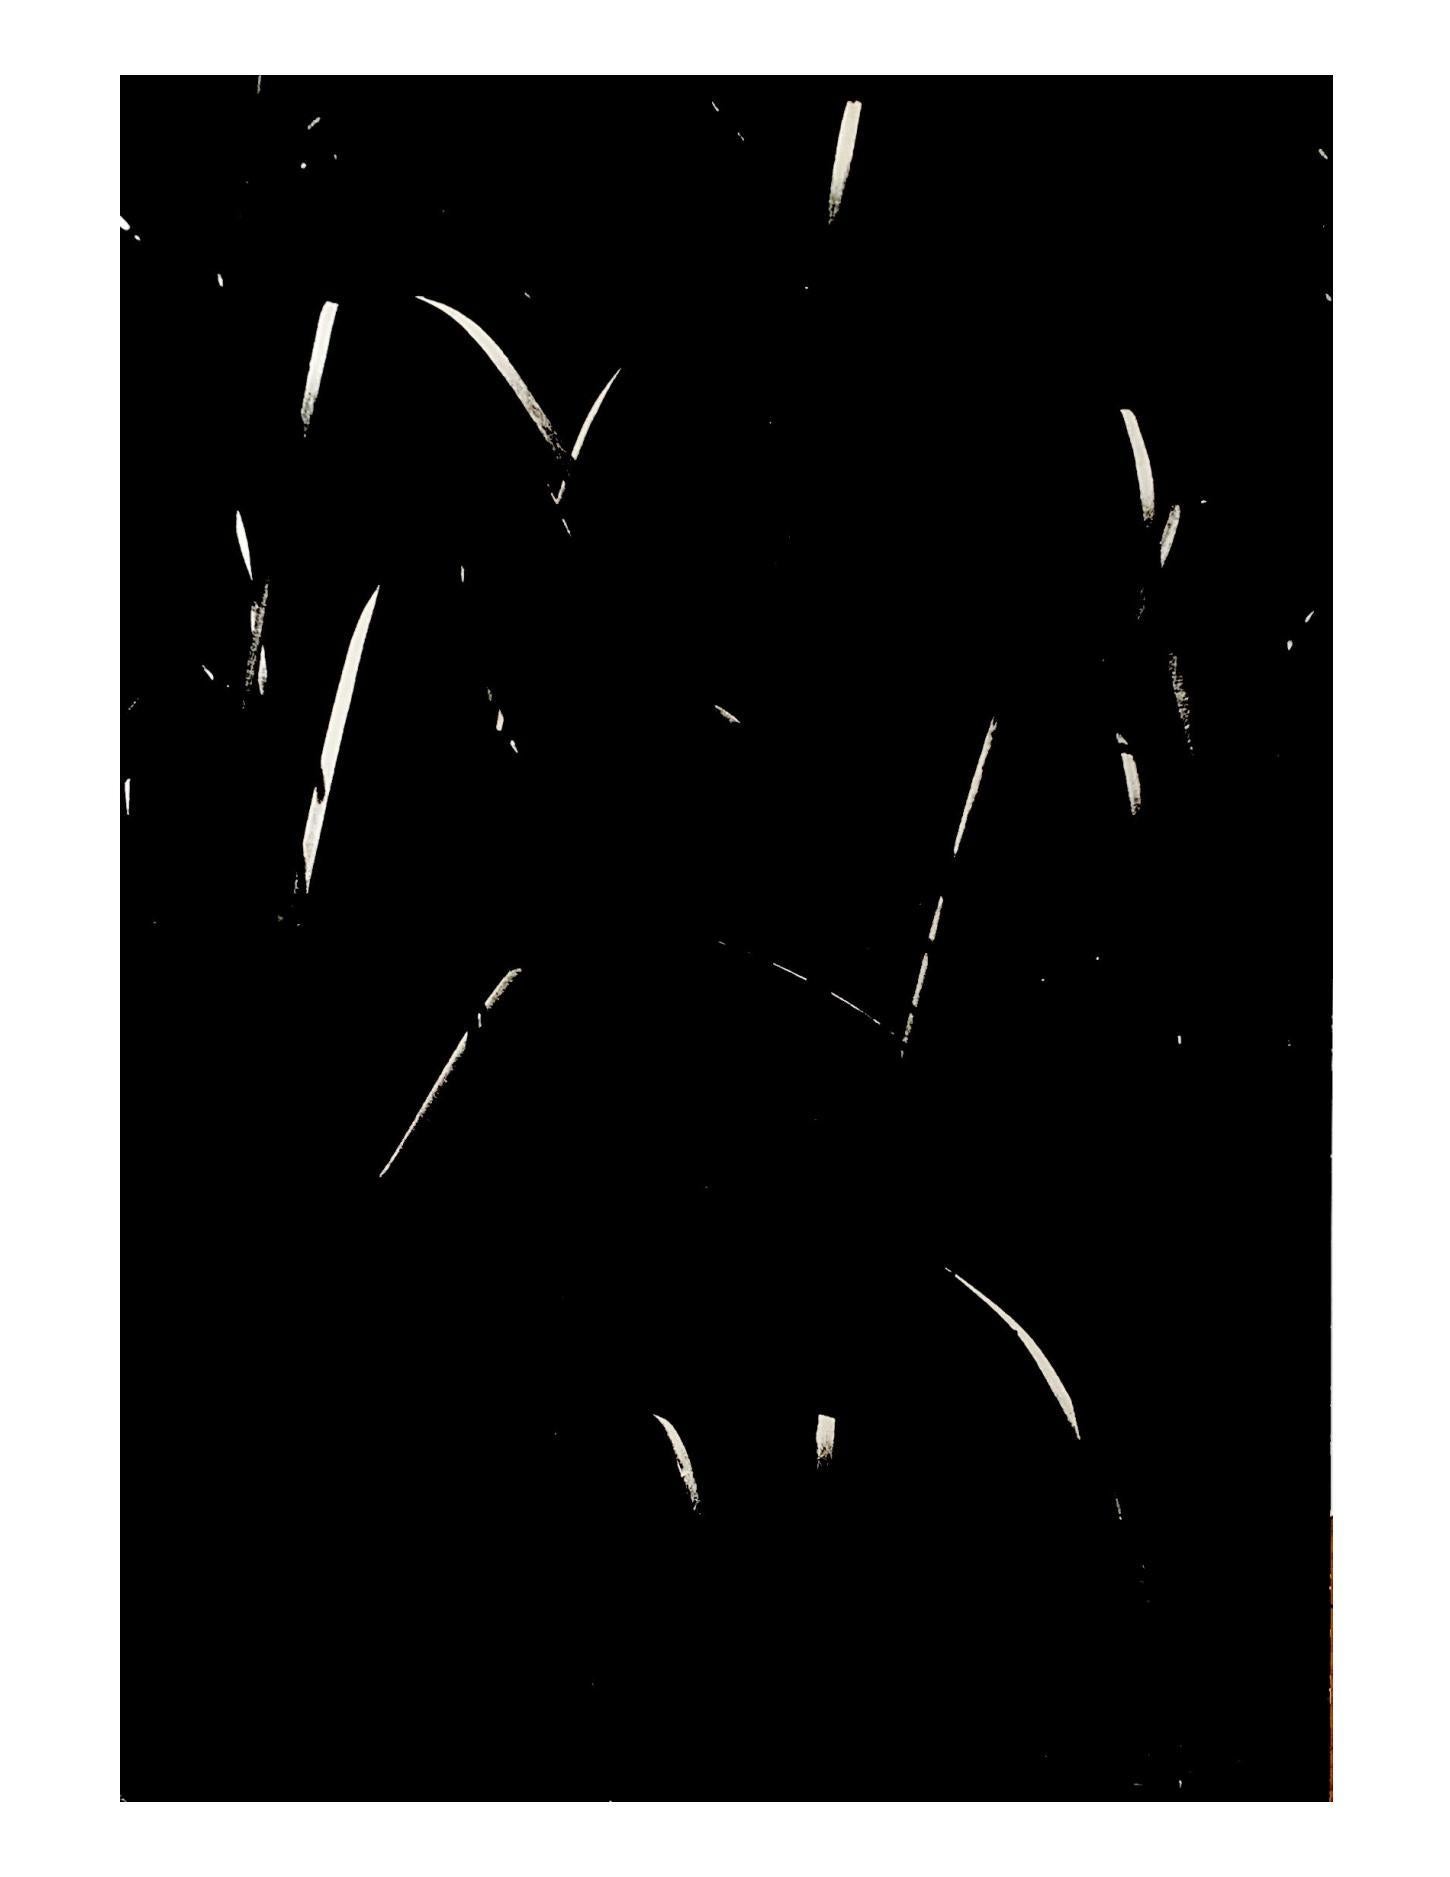 - La Camargue secrète par L.A. 
2 x héliogravures vintage sur papier lourd semi-brillant, signées au crayon en bas à droite par Lucien Clergue.
1976
H 34 cm 
L : 25 cm 
D : 1 cm 

En parfait état !

Lucien Clergue est un photographe français, né le